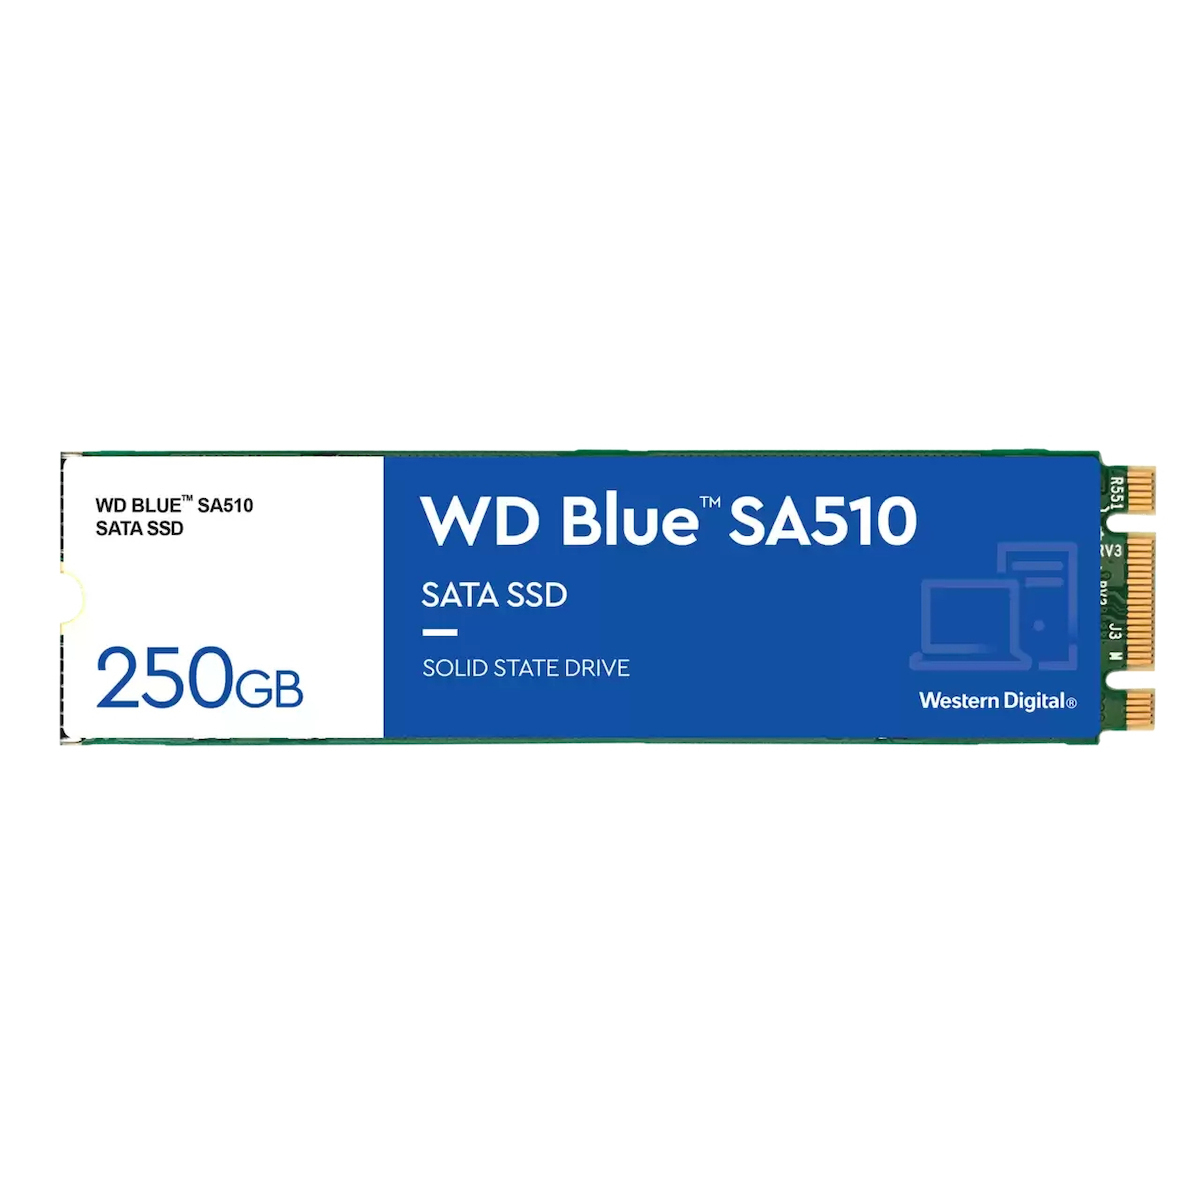 SSD WD BLUE 500GB SA510 PCIE NVME M.2 WDS500G3B0B